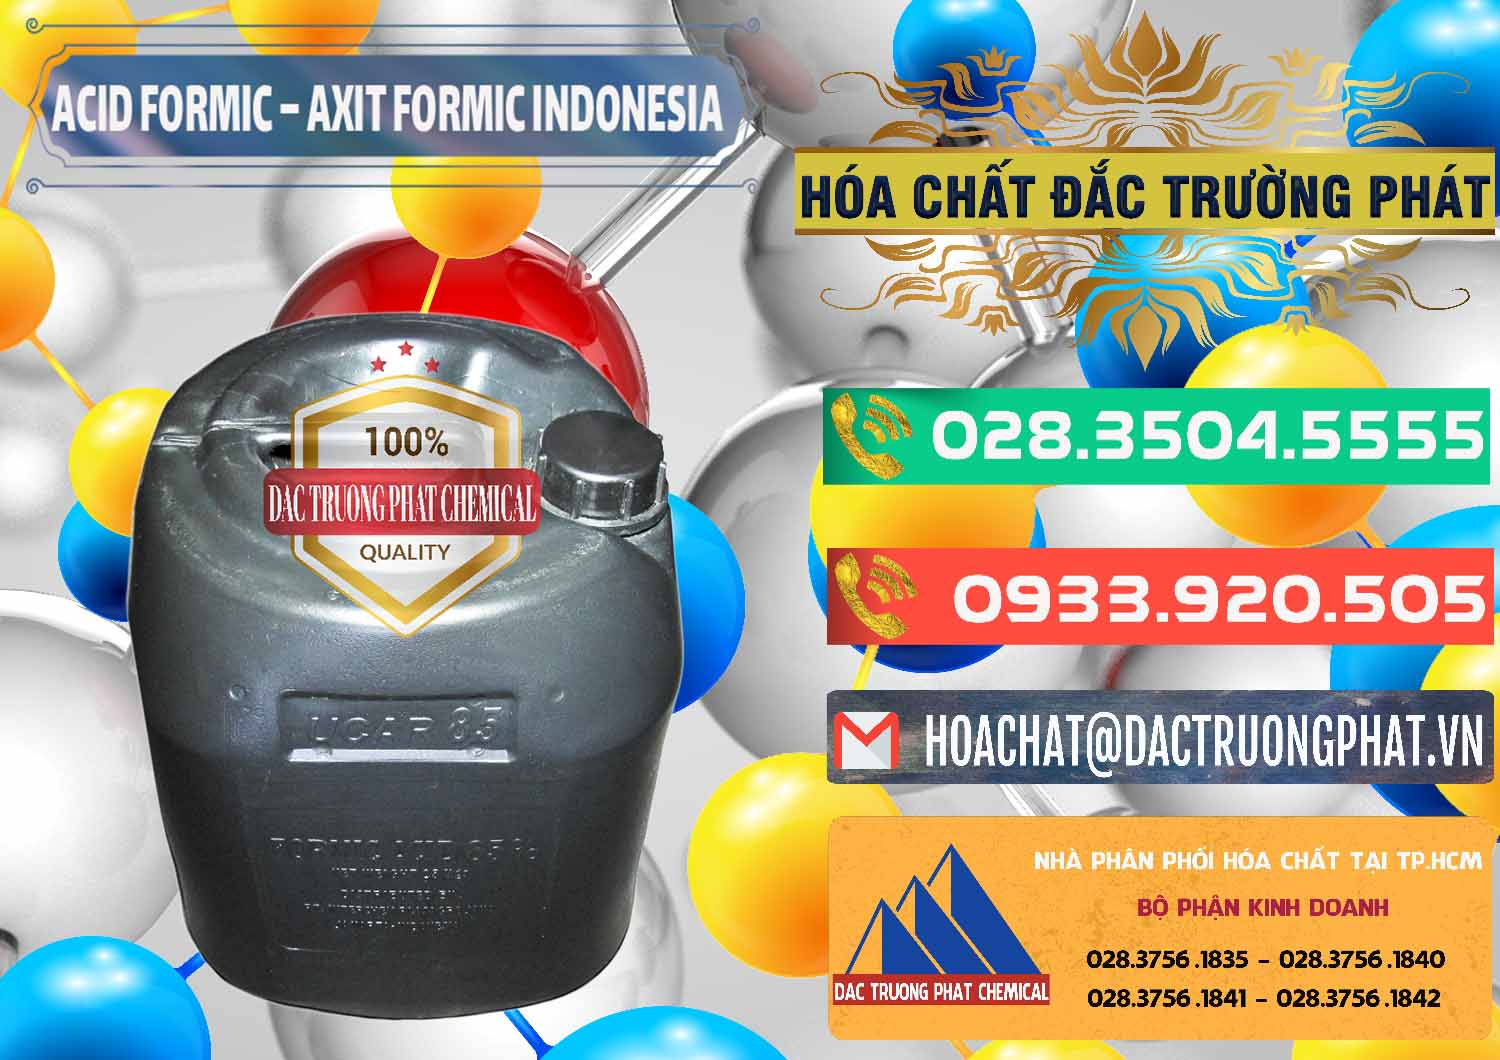 Nơi chuyên bán & phân phối Acid Formic - Axit Formic Indonesia - 0026 - Cung cấp _ phân phối hóa chất tại TP.HCM - congtyhoachat.com.vn